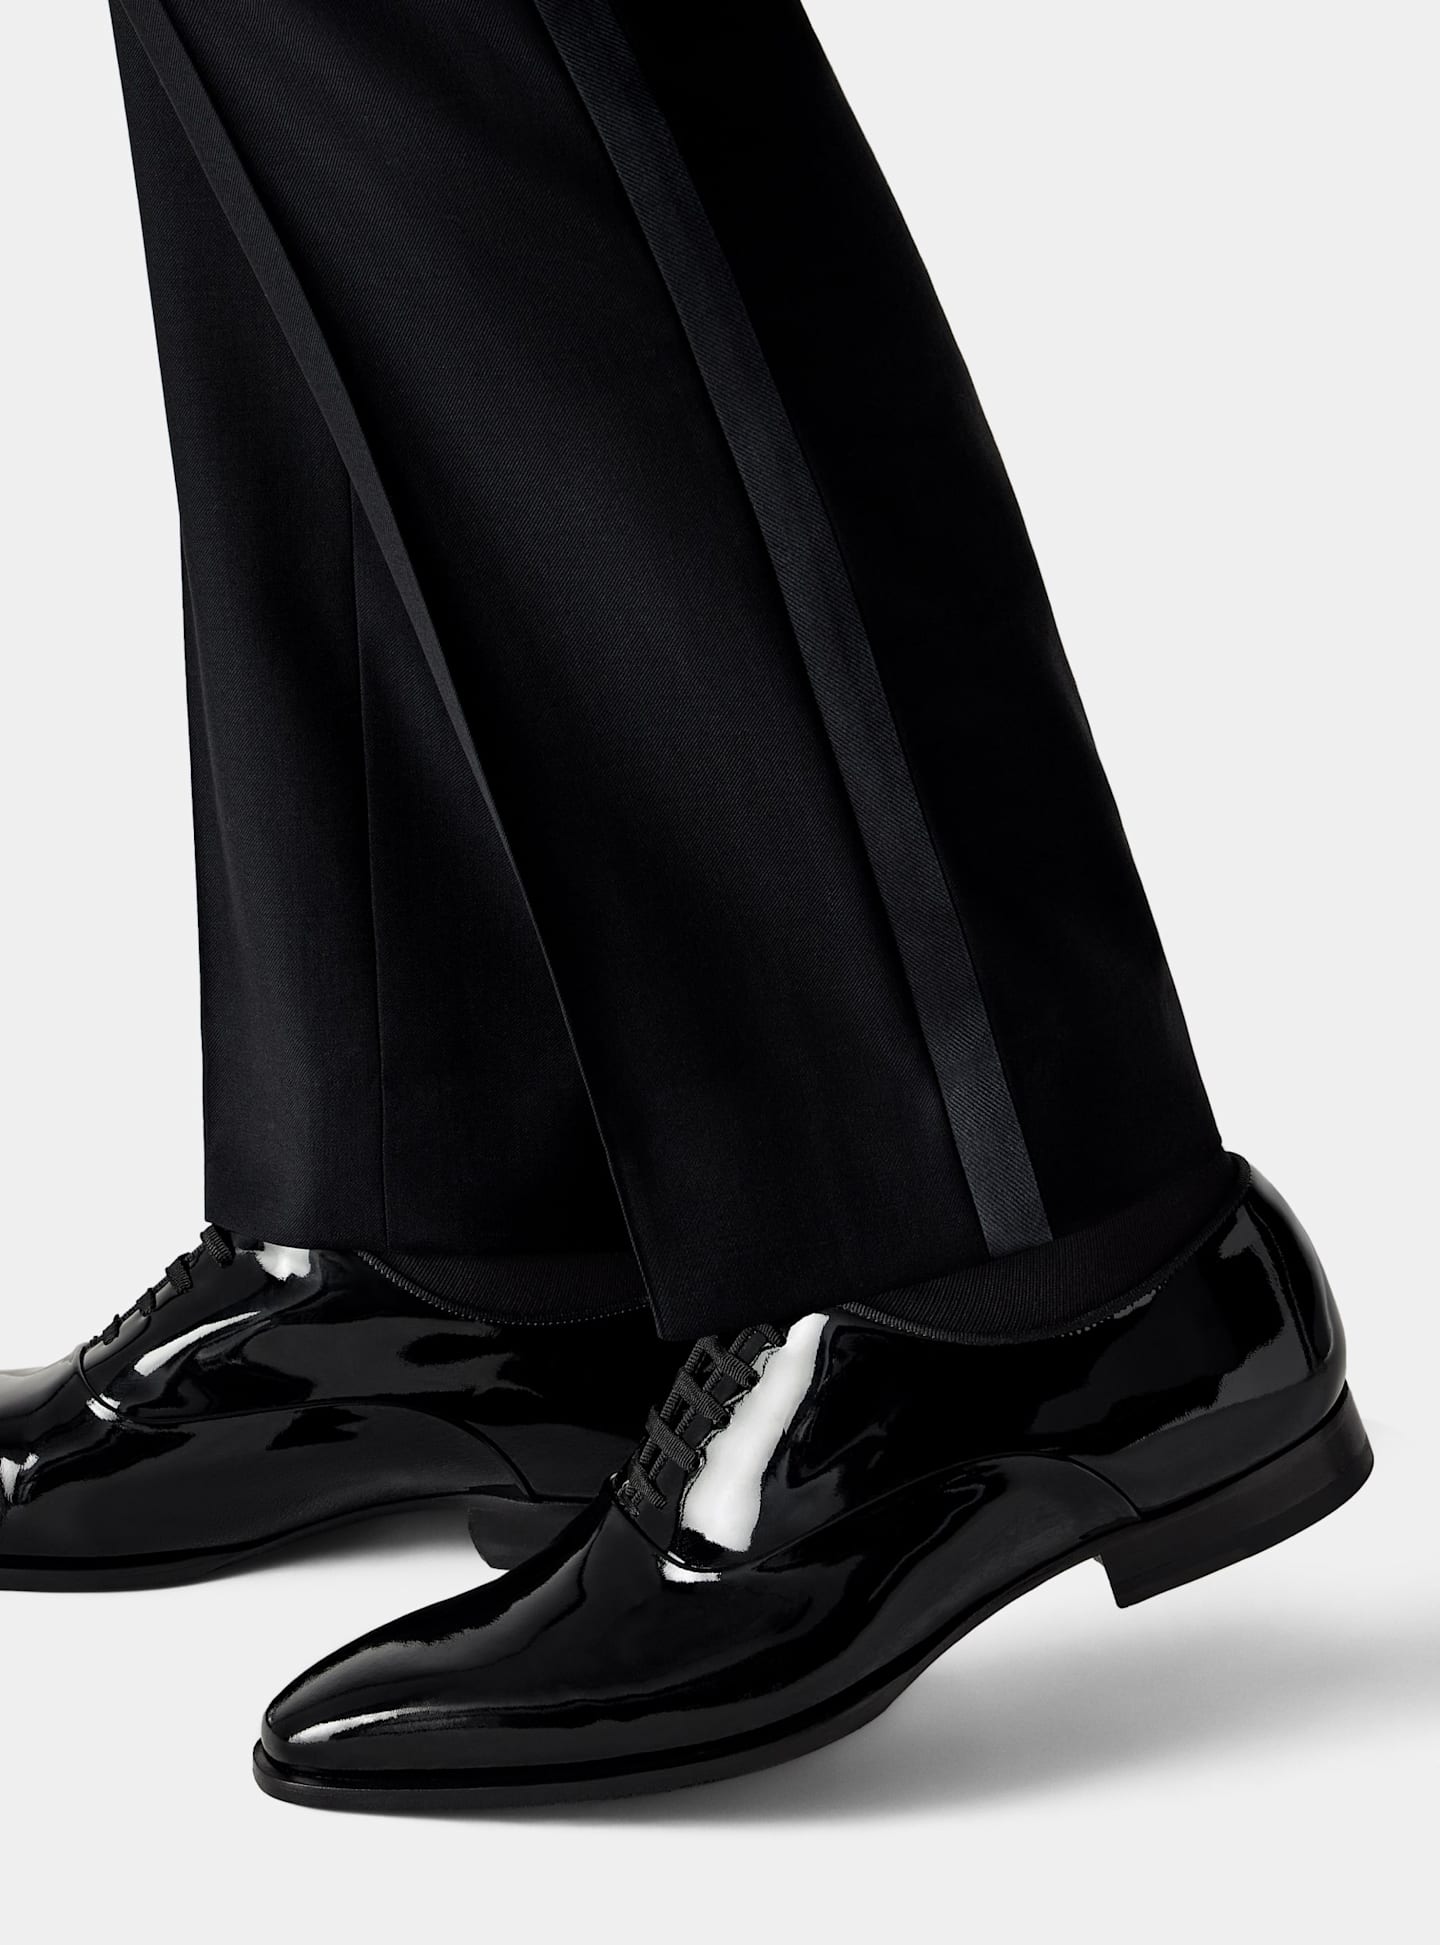 Vue de détail d'un pantalon de smoking noir avec chaussures à lacets en cuir verni noir.